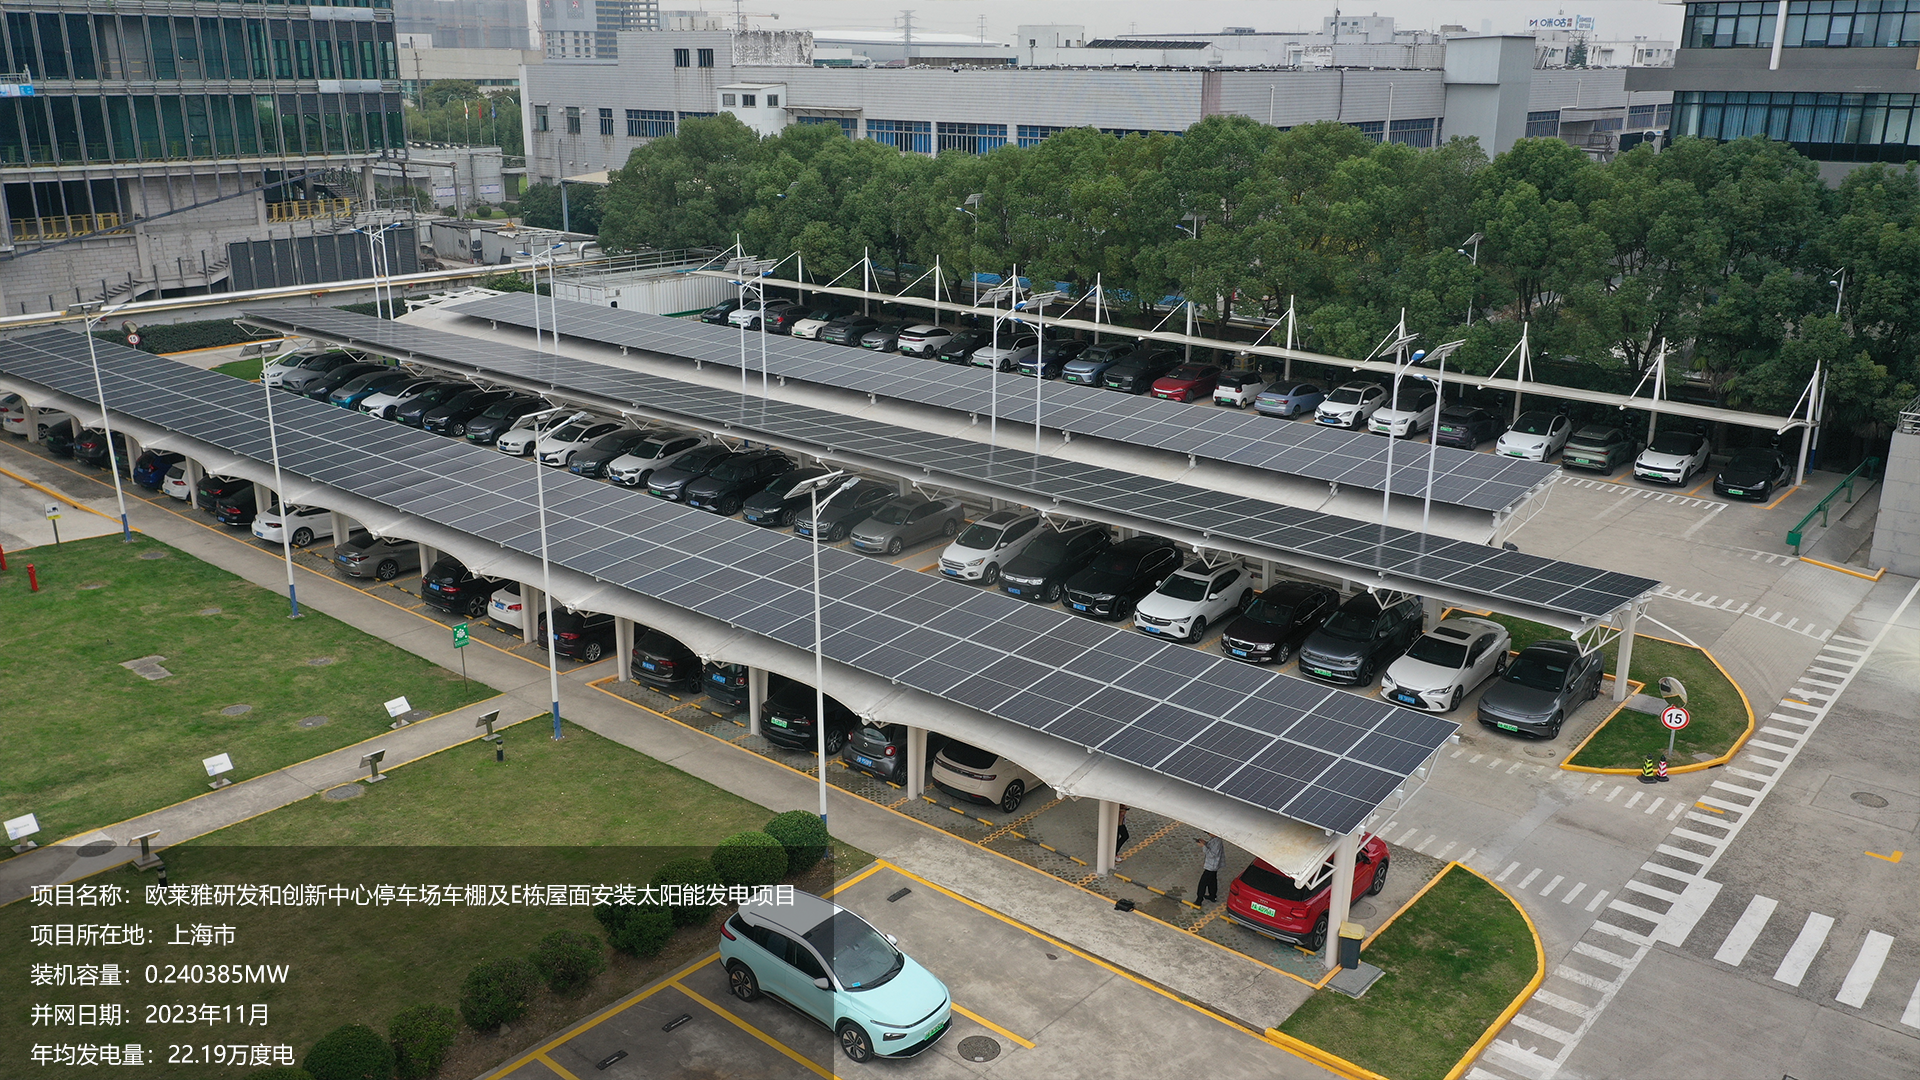 上海欧莱雅项目总装机容量0.240385MW，项目位于上海市，于2023年11月并网发电，年均发电量约22万度。			